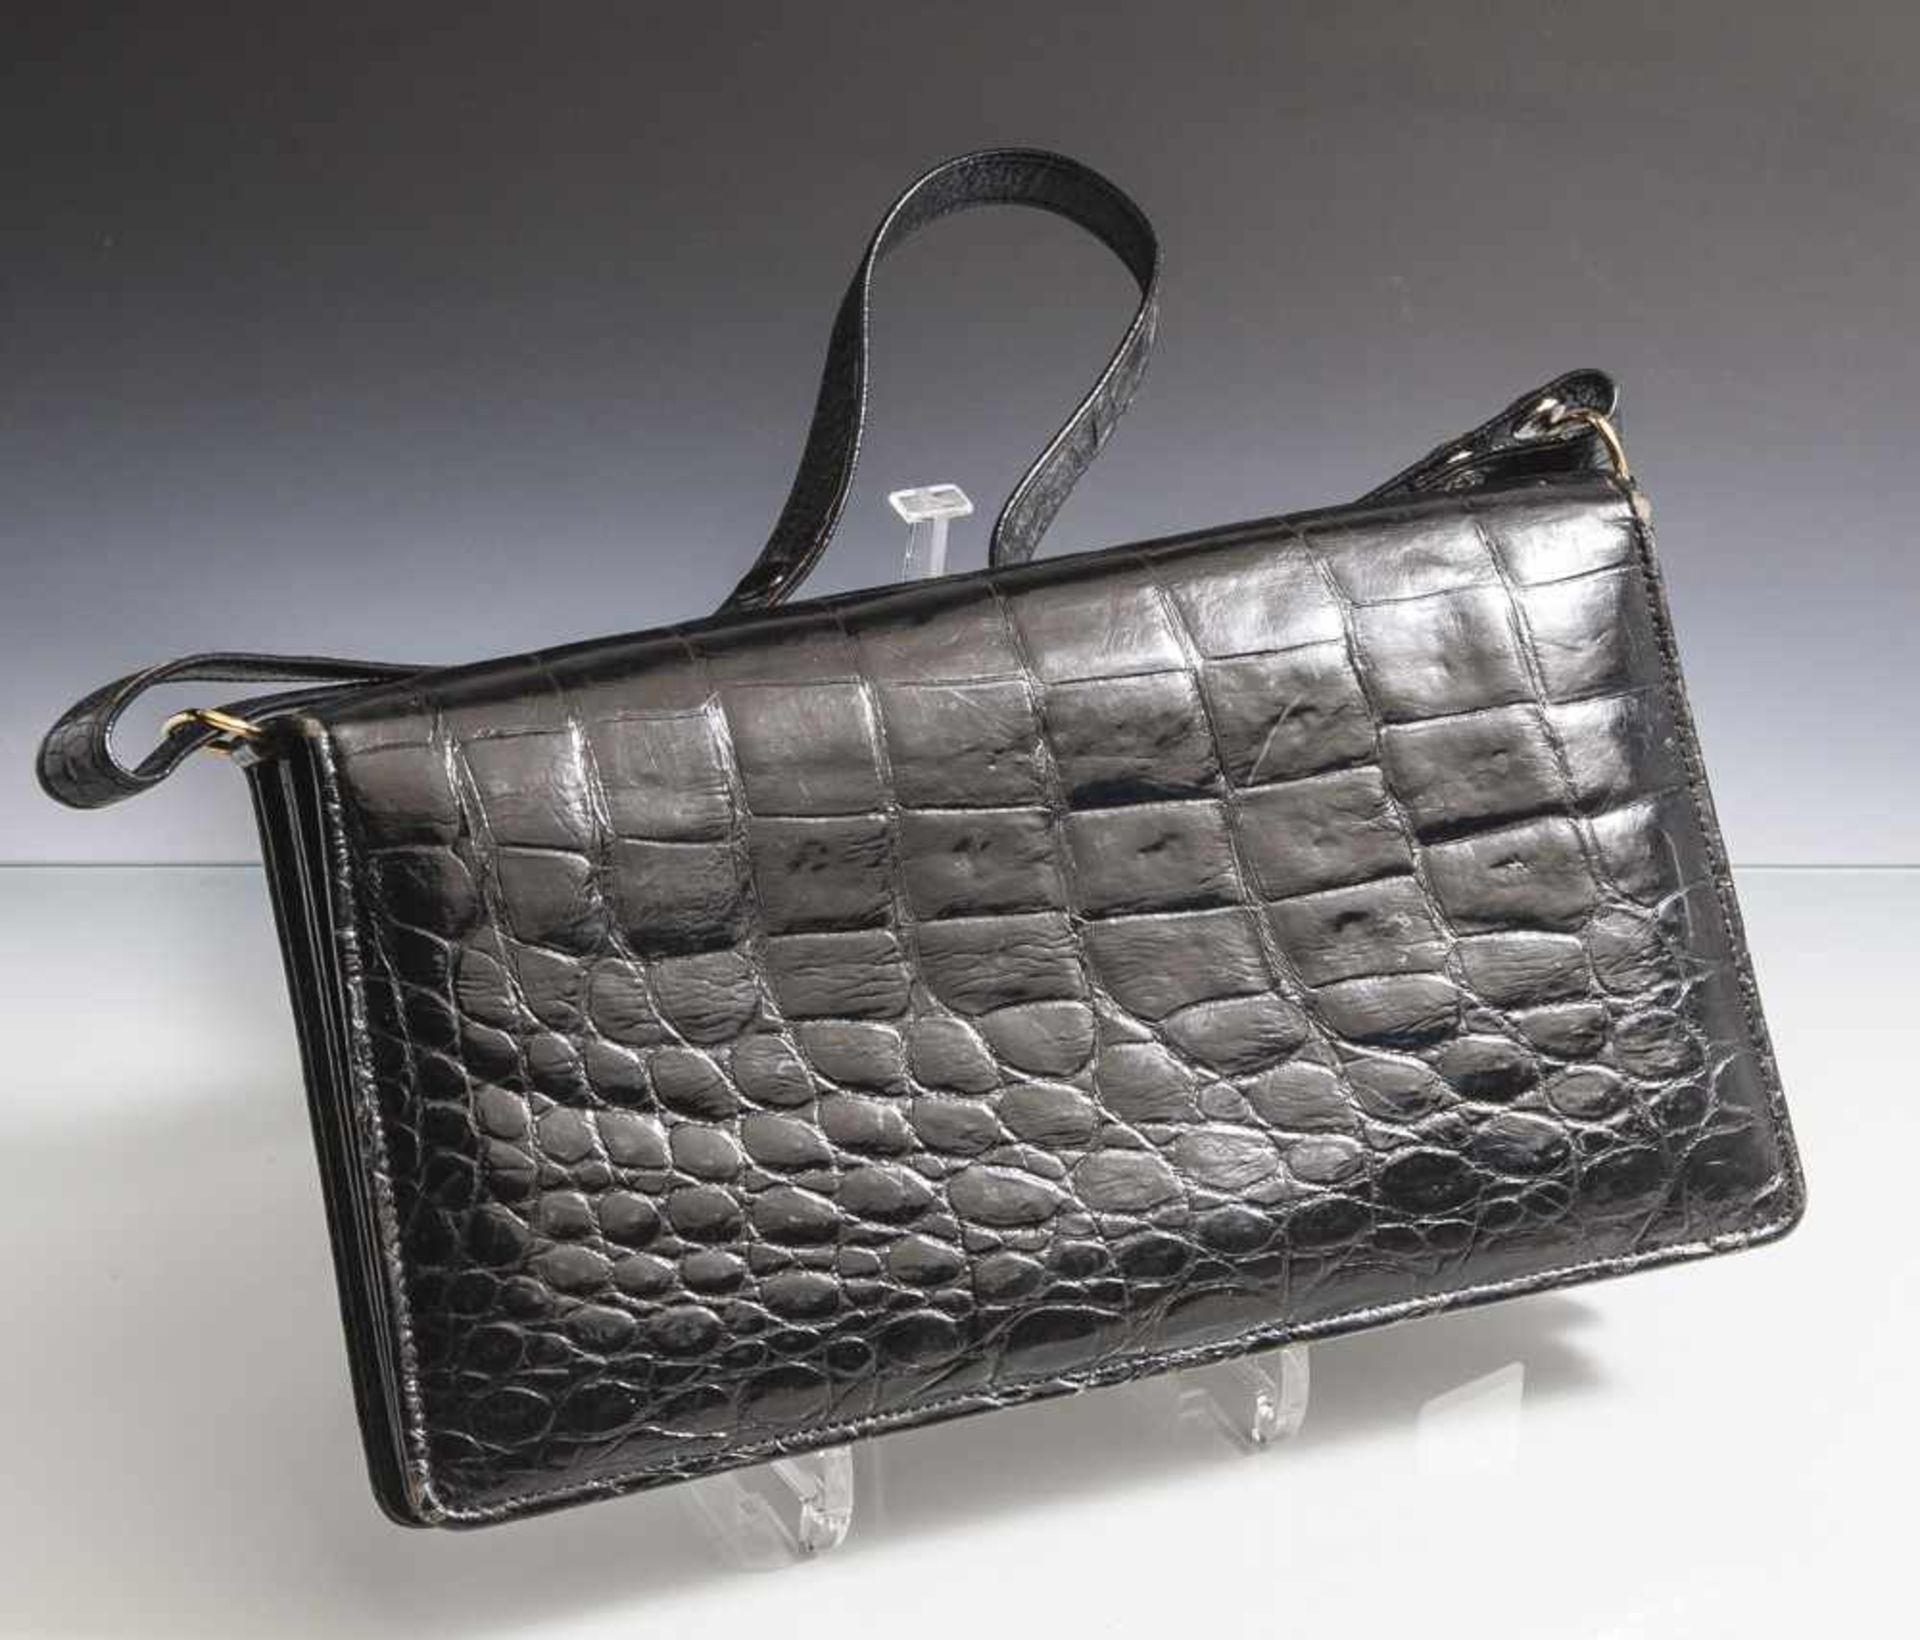 Handtasche, Krokodilleder, schwarz, rechteckige Form, vorne mit Druckknopf, innen unterteilt in 2